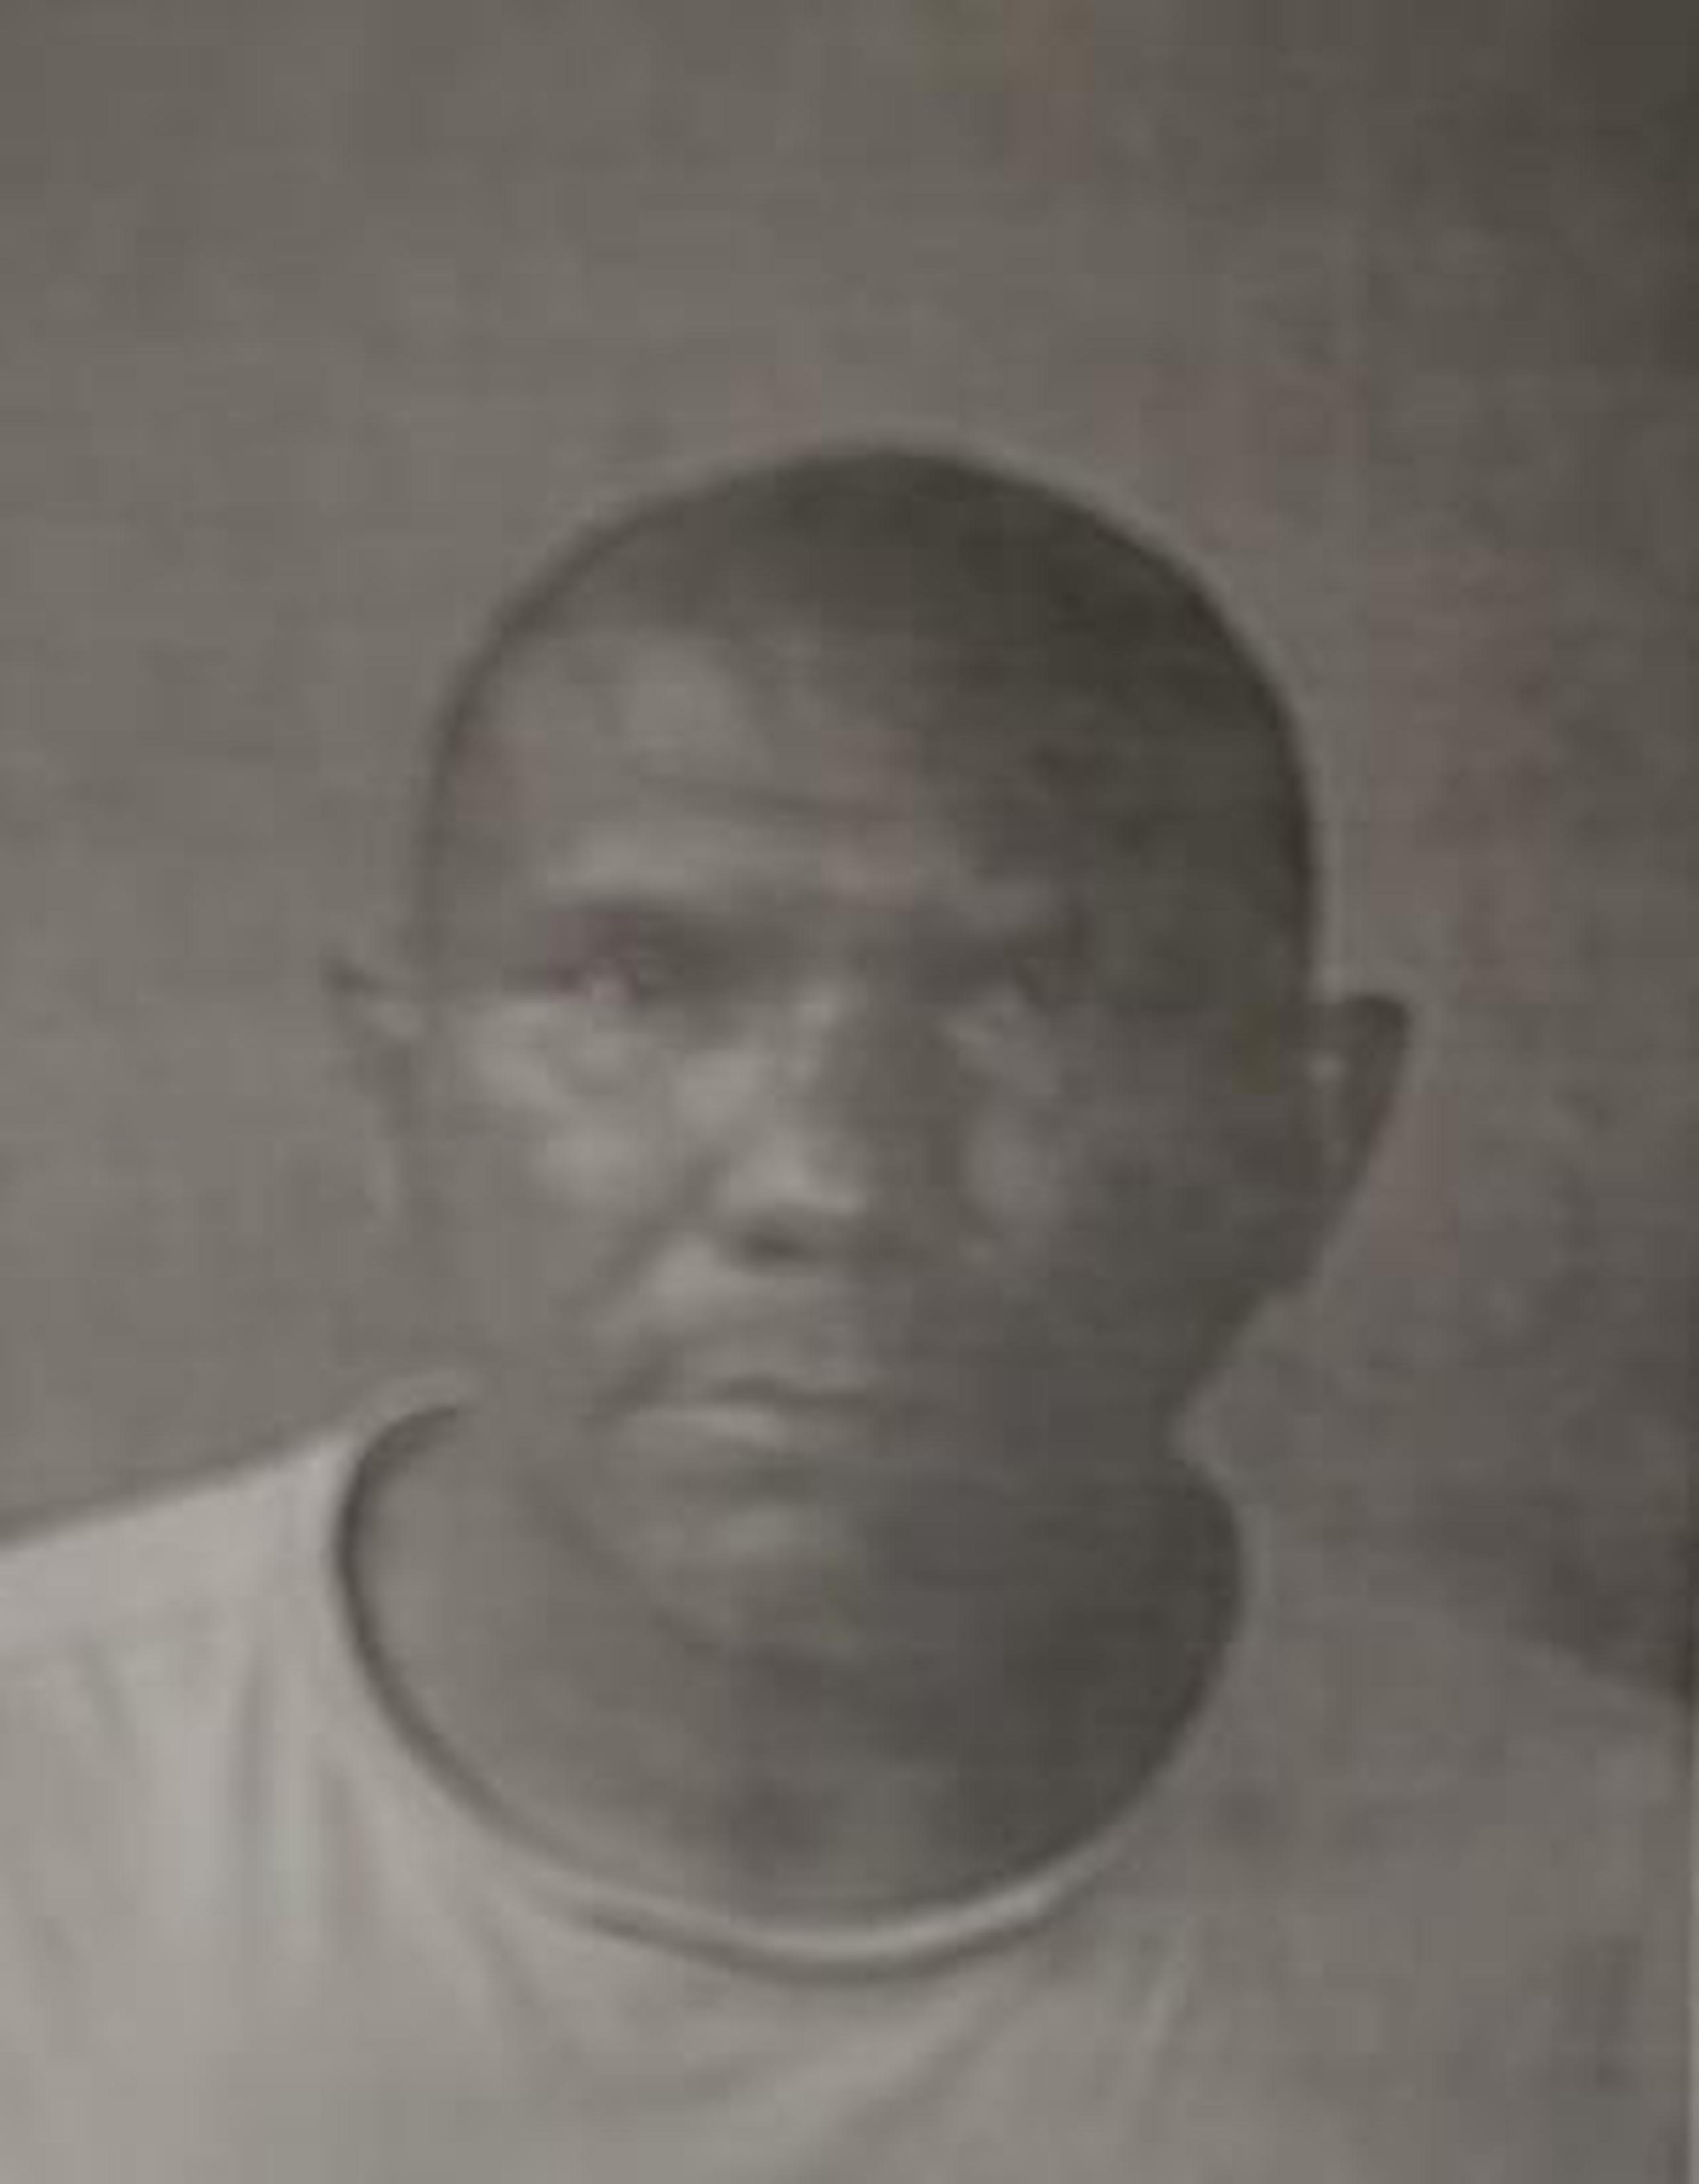 El imputado fue identificado como Ramón Rosa Rojas, de 50 años y residente en Carolina. (Suministrada)